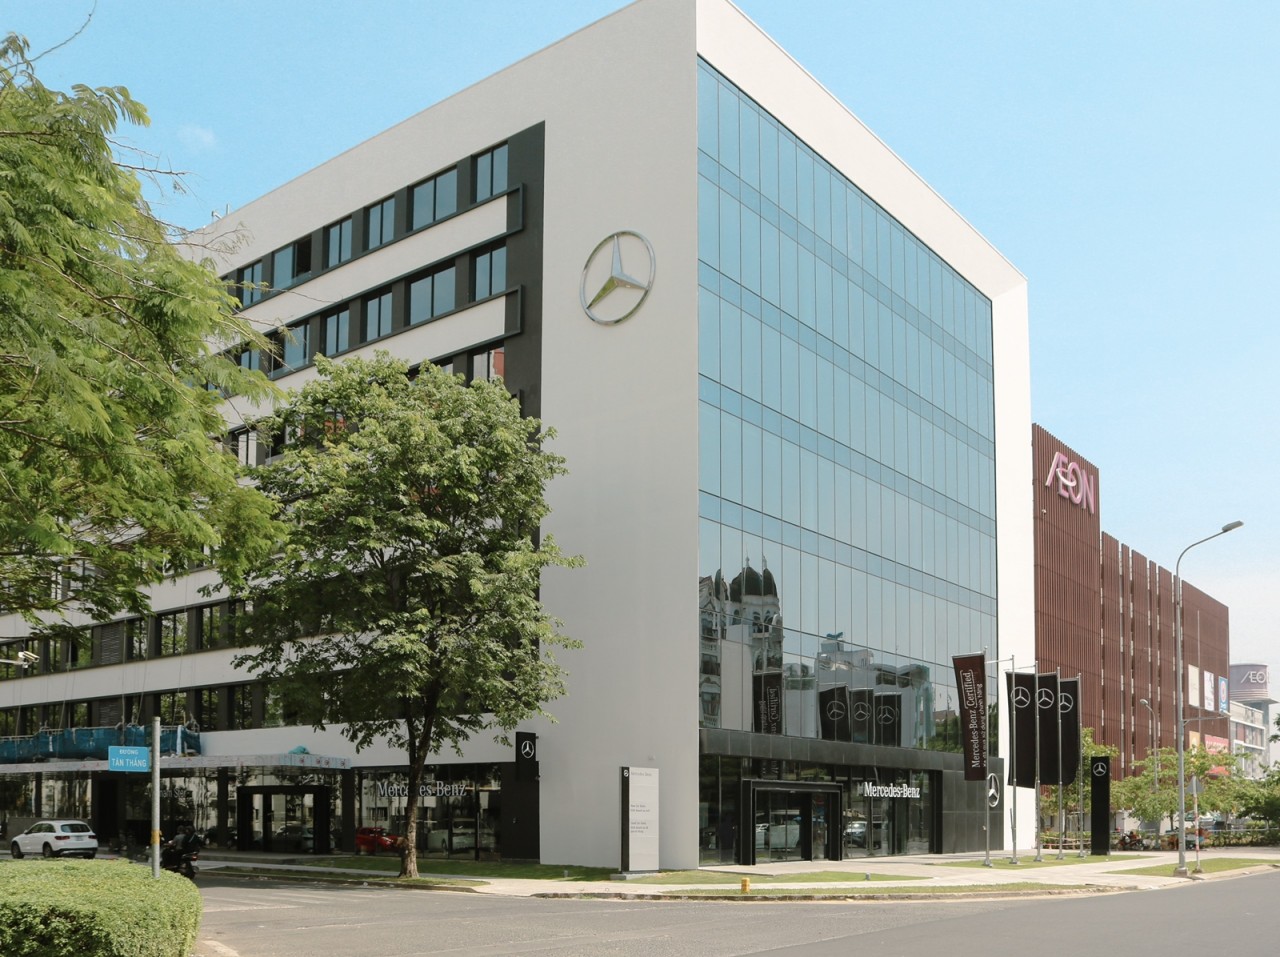 Mercedes-Benz khai trương đại lý đạt chuẩn toàn cầu đầu tiên tại Tp. HCM